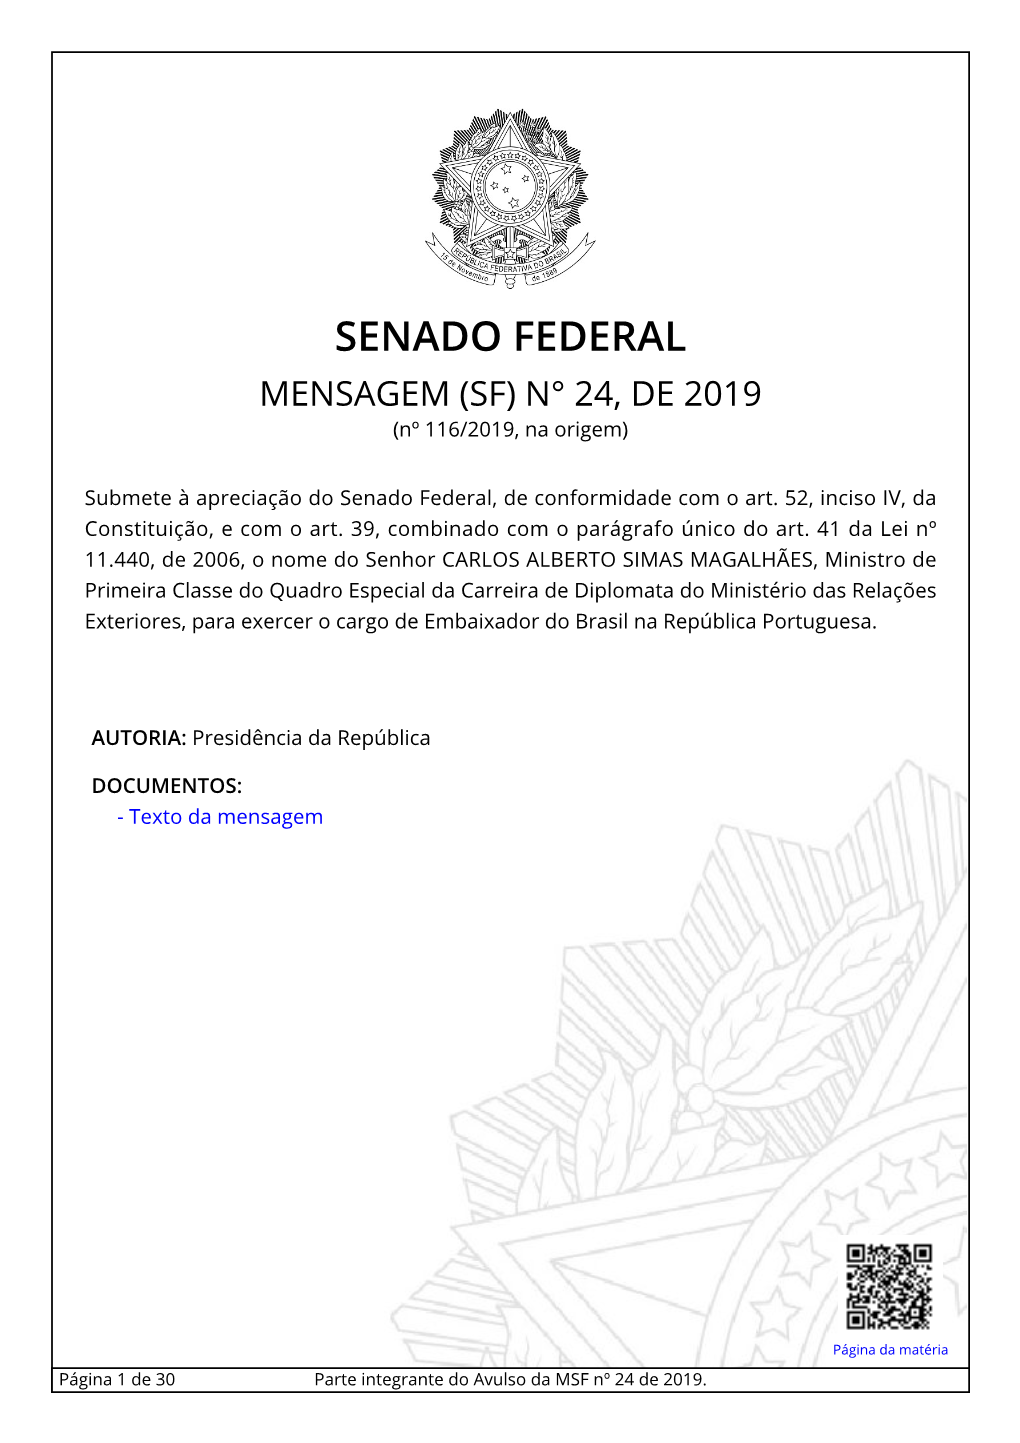 SENADO FEDERAL MENSAGEM (SF) N° 24, DE 2019 (Nº 116/2019, Na Origem)